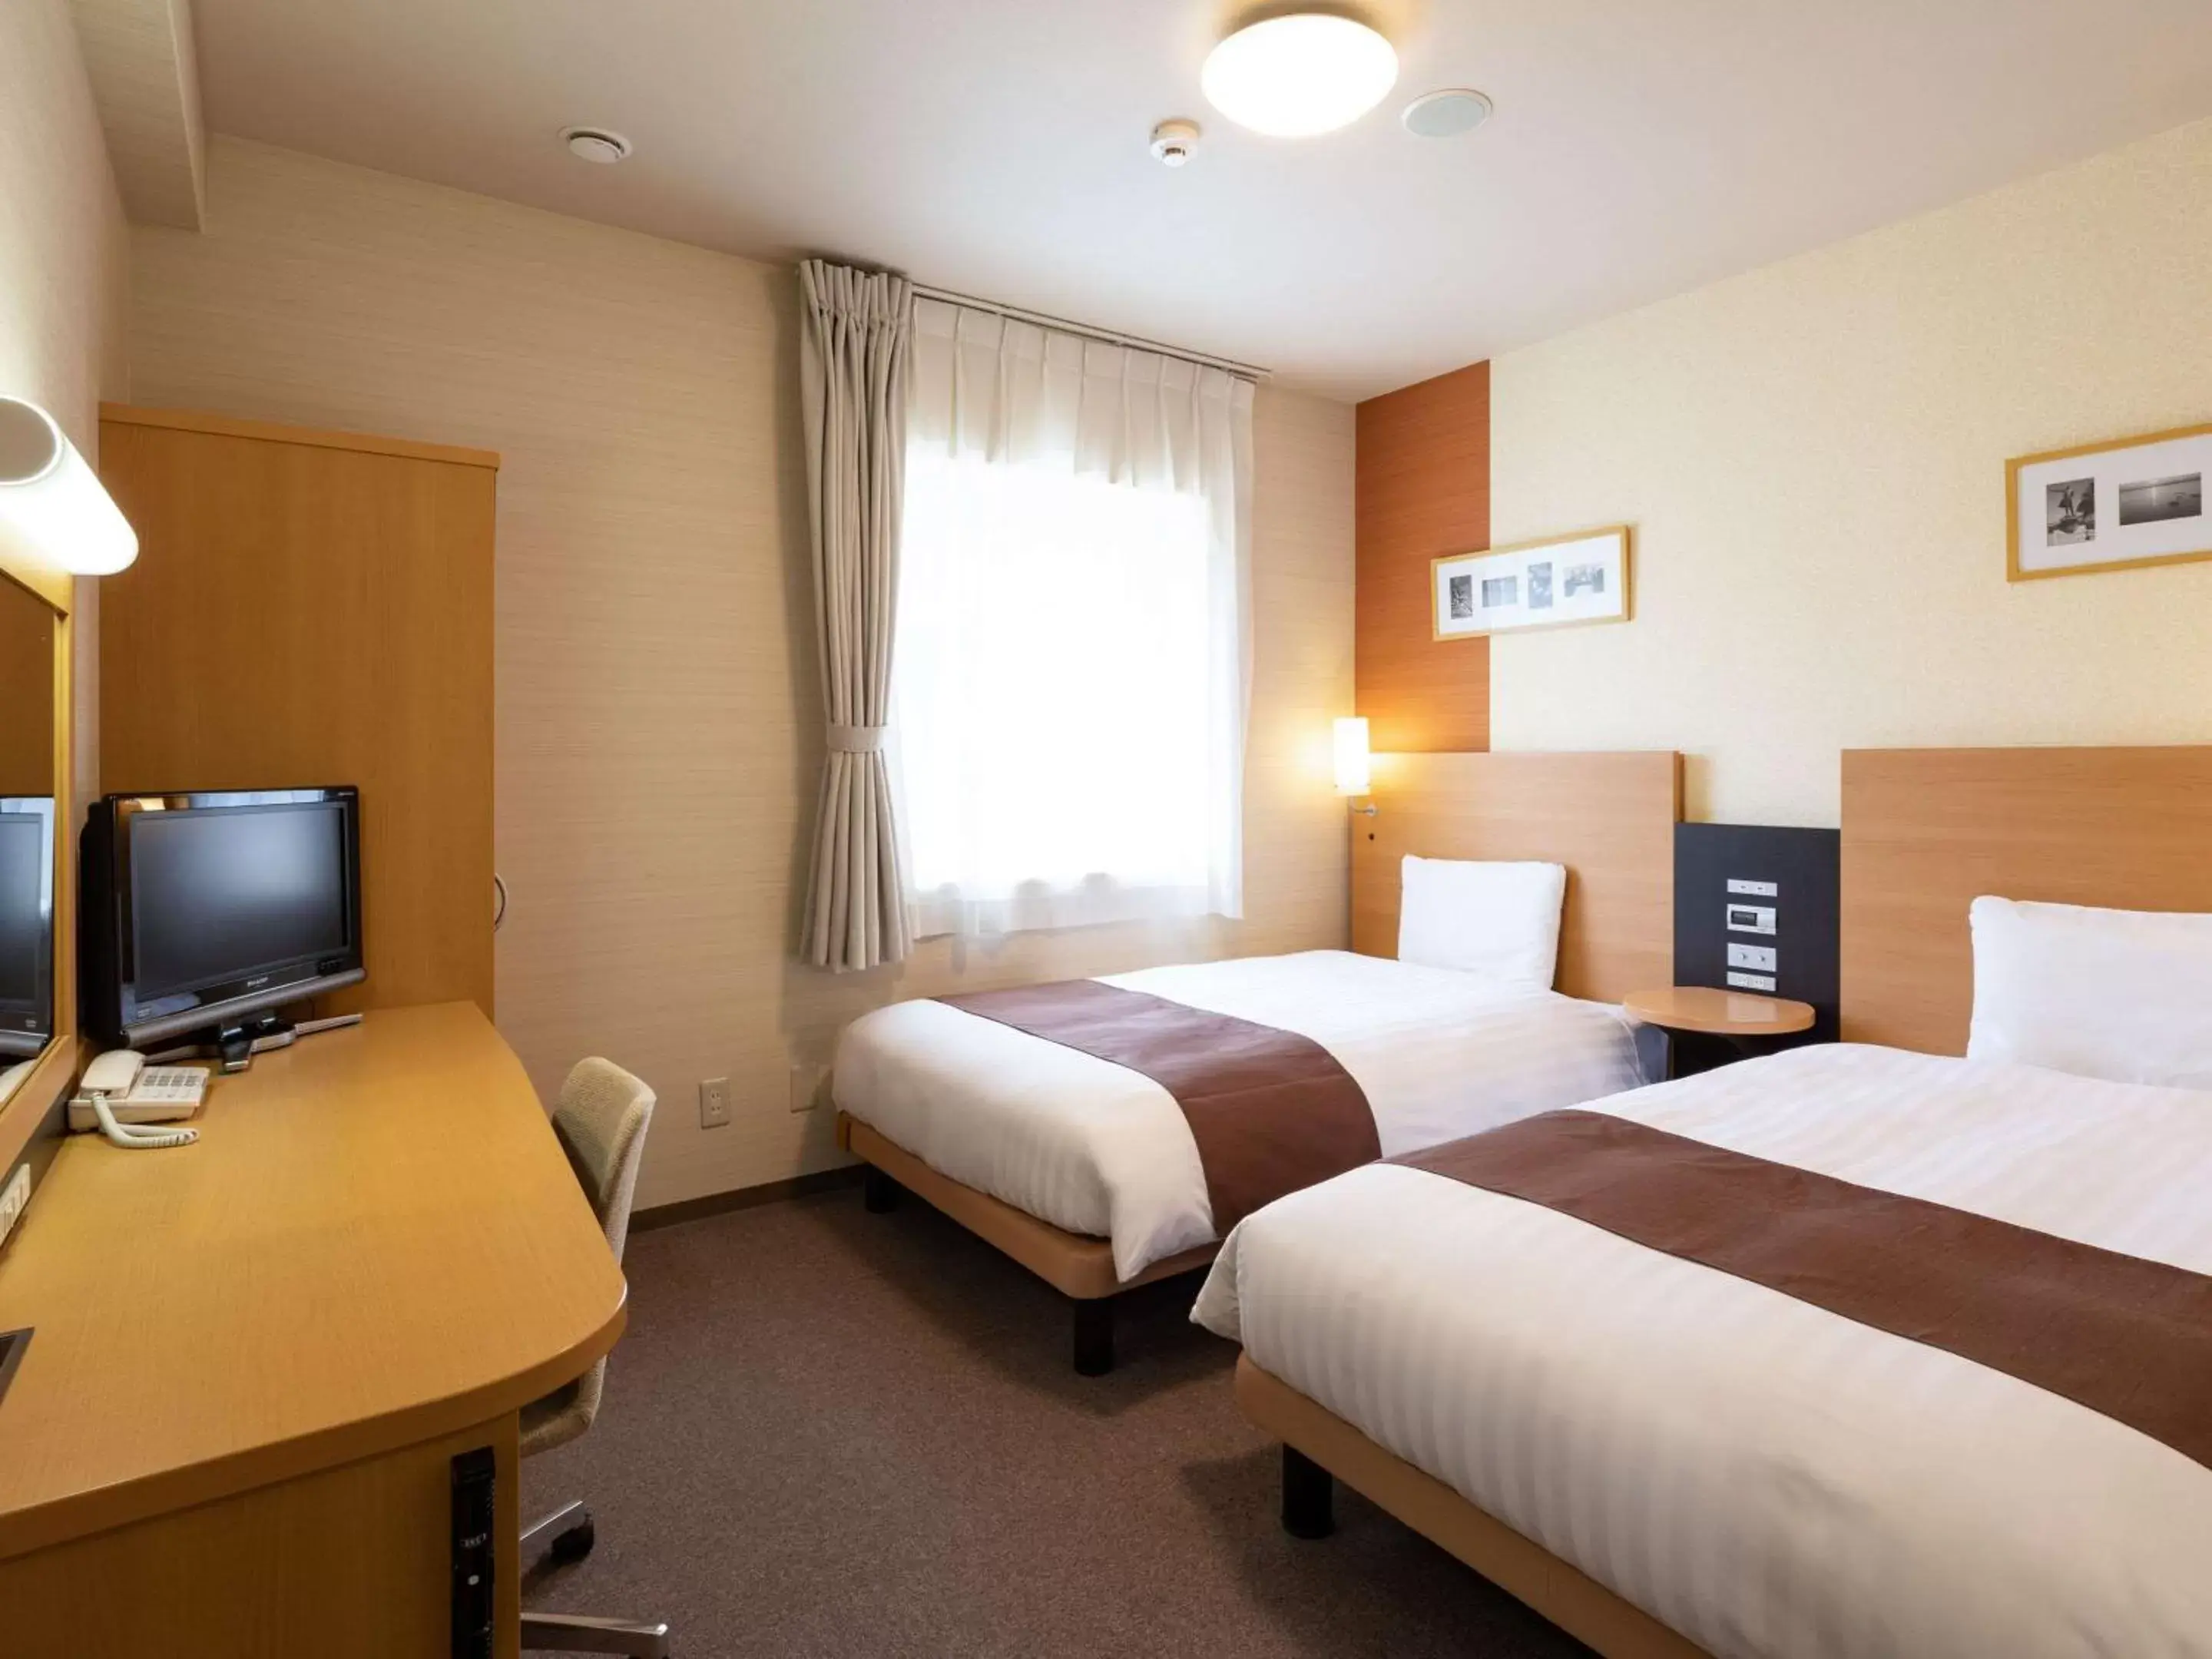 Bedroom, Bed in Comfort Hotel Tomakomai